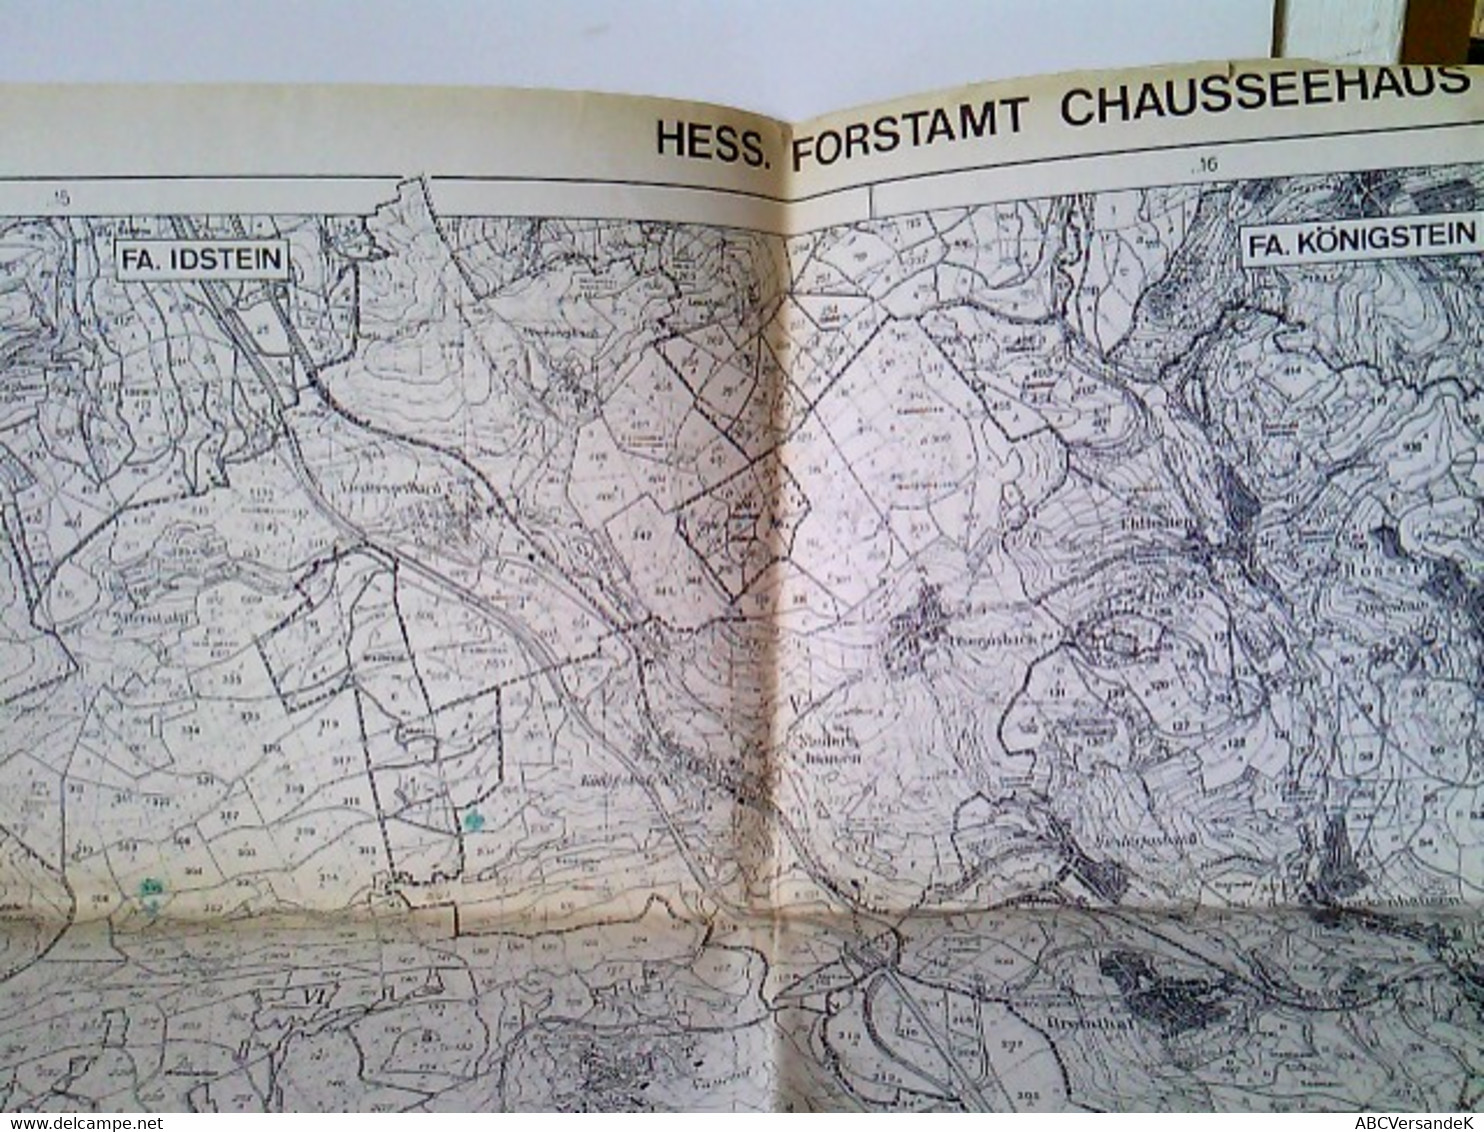 Forstübersichtskarte (Nr. 117) Des Hessischen Forstamts Chausseehaus. Maßstab 1 : 25000. Ausgabe 1984 - Hesse